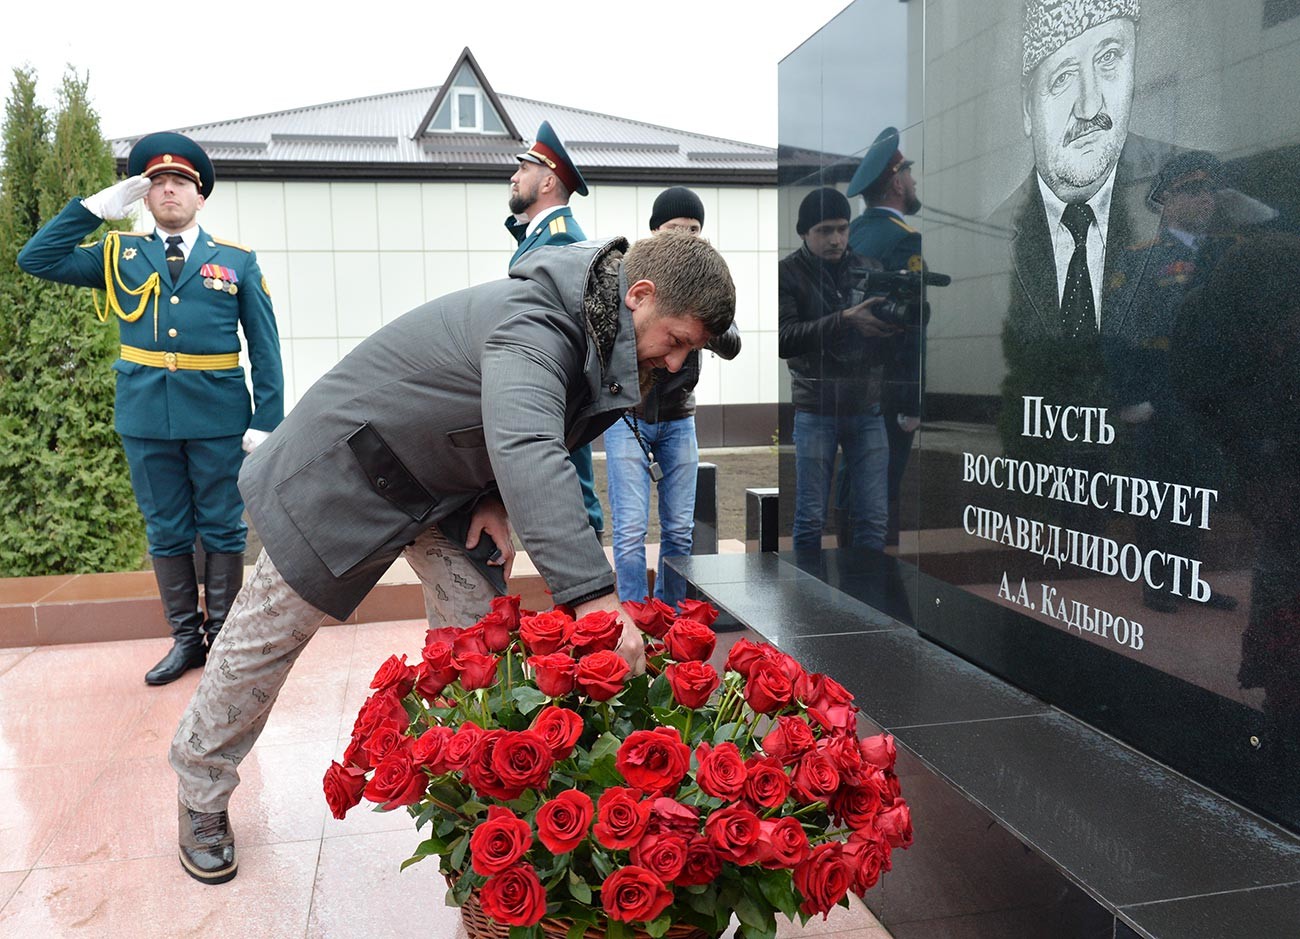 Ръководителят на Чеченската република Рамзан Кадиров поднася цветя на паметника на първия президент на Чеченската република Ахмат Кадиров.